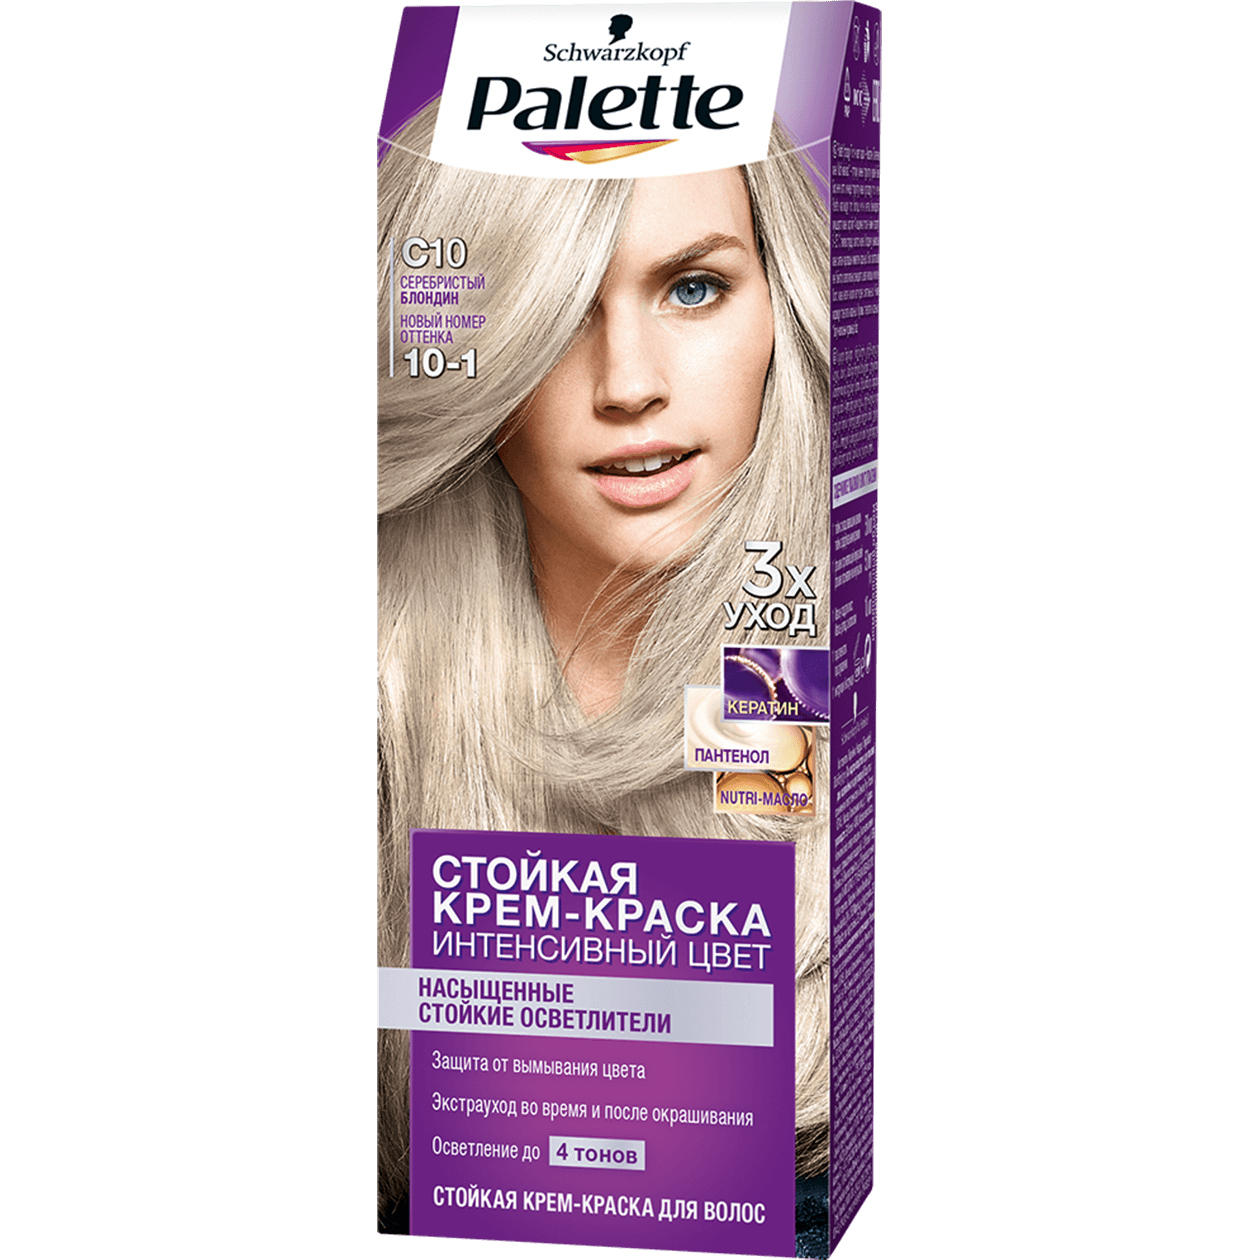 фото Крем-краска для волос palette интенсивный цвет 10-1, c10 серебристый блондин 110 мл